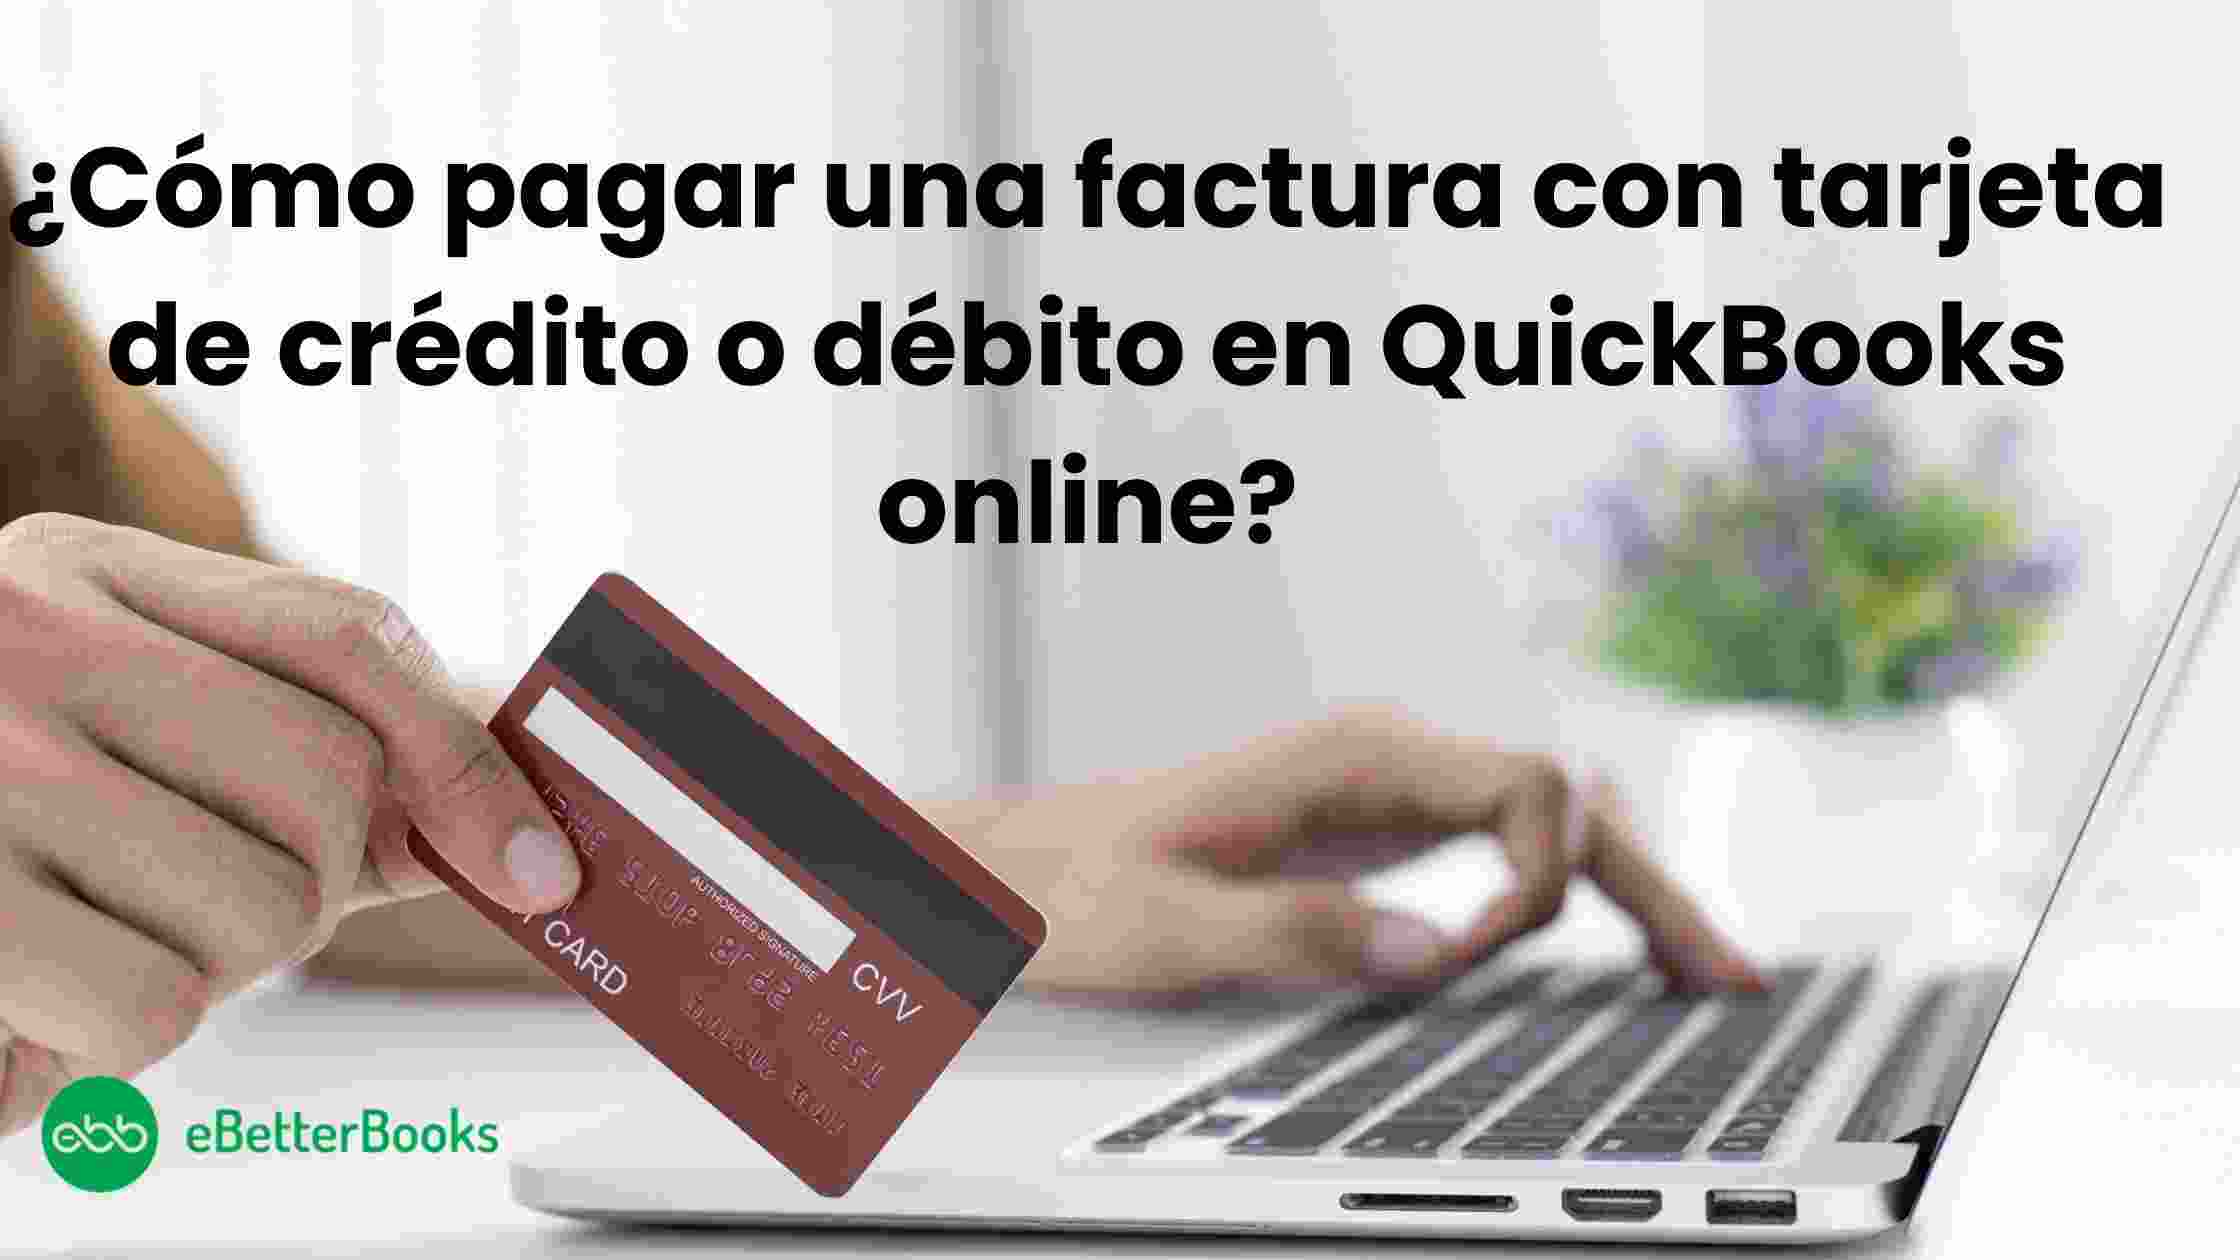 ¿Cómo pagar una factura con tarjeta de crédito o débito en QuickBooks online?